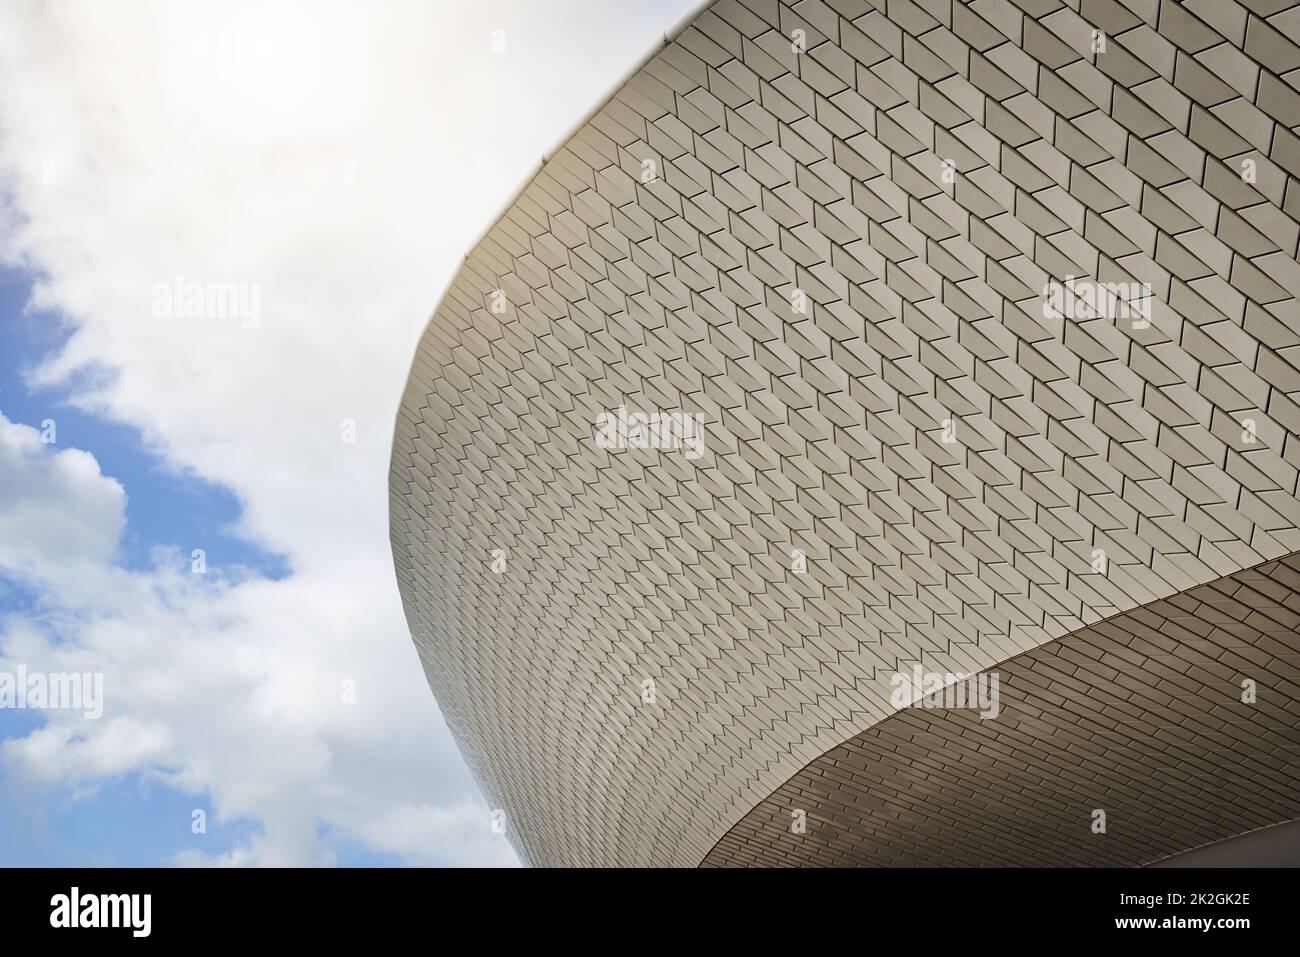 E' uno stadio di classe mondiale. Inquadratura ad angolo basso di uno stadio sportivo con nuvole sullo sfondo all'aperto durante il giorno. Foto Stock